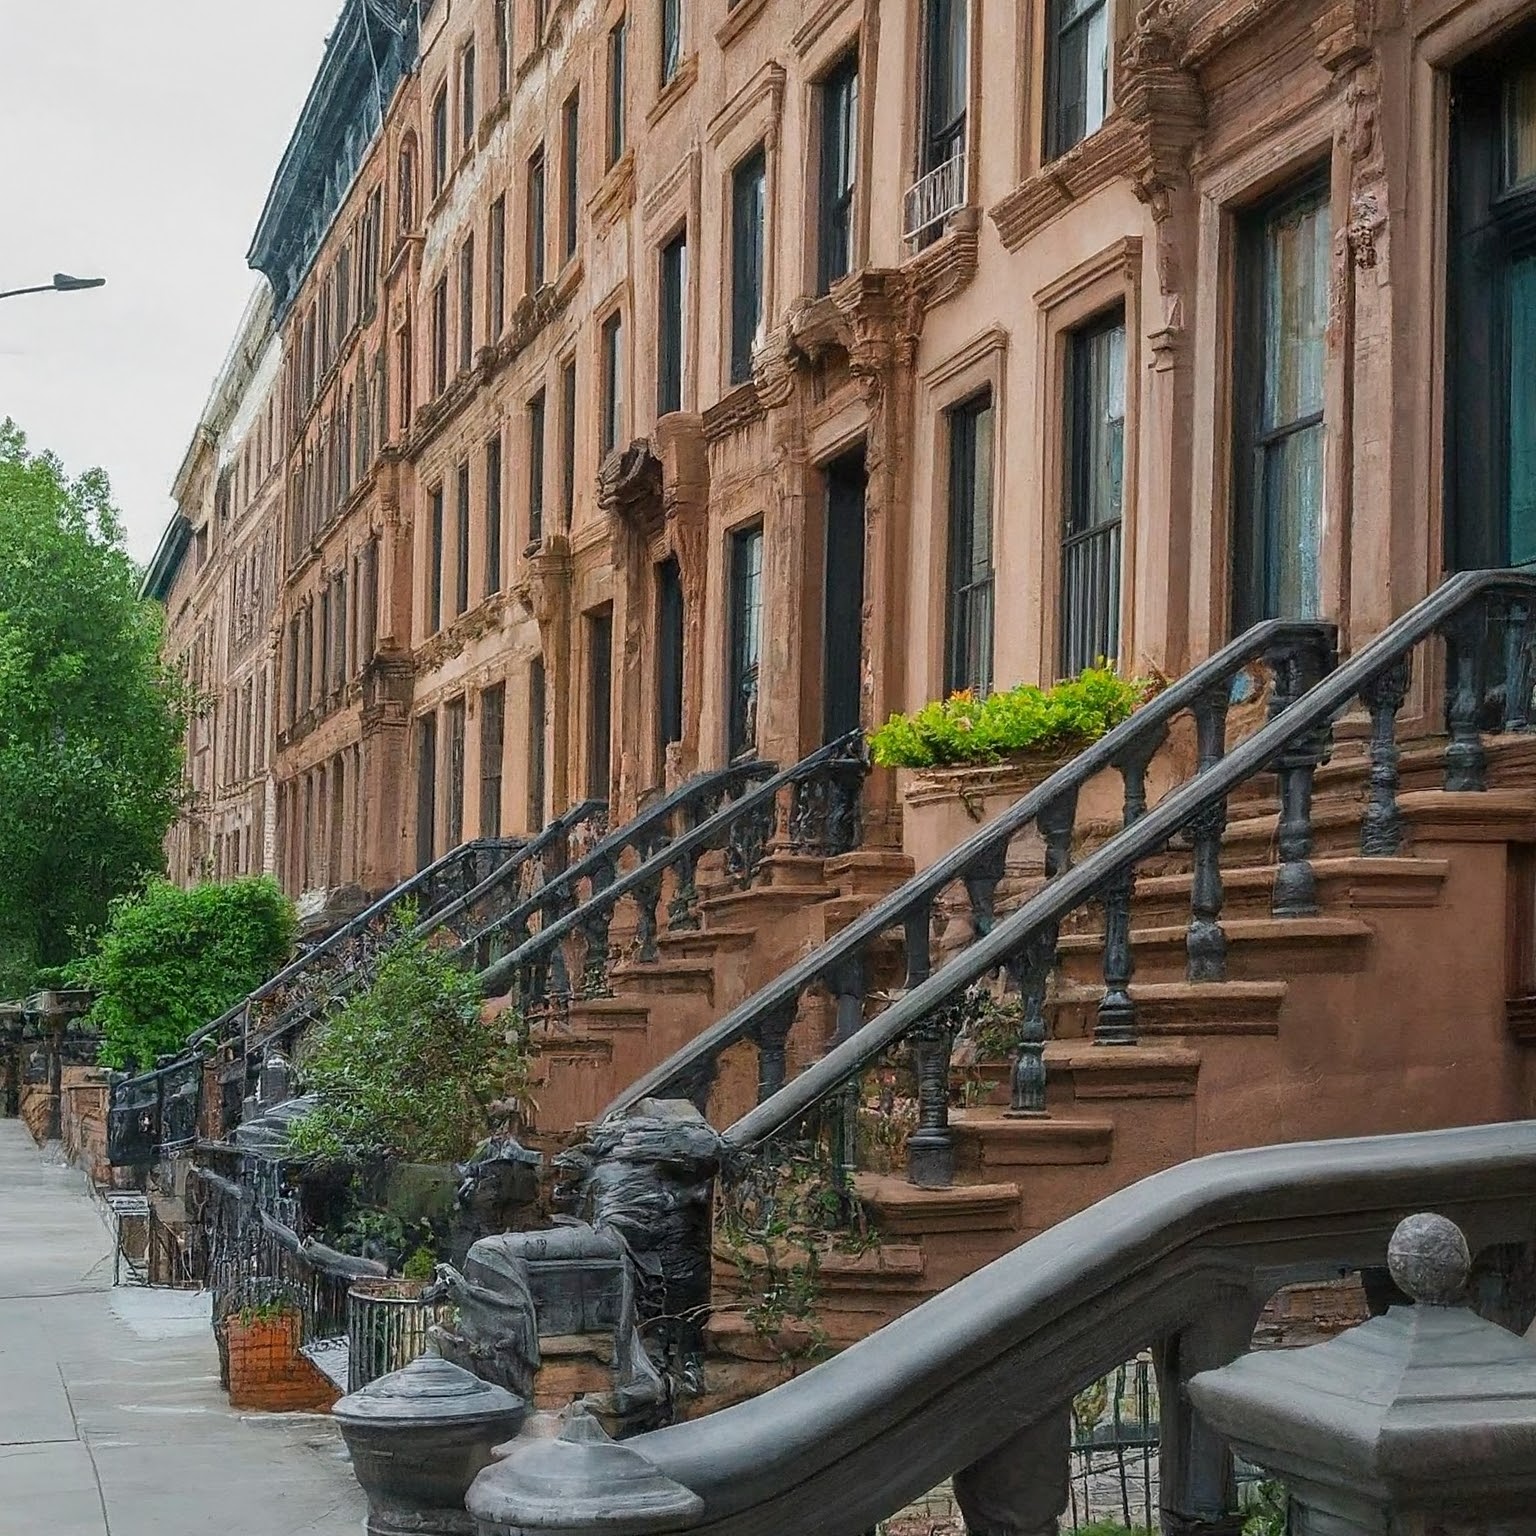 NYC Real Estate: Homeownership in Neighborhoods